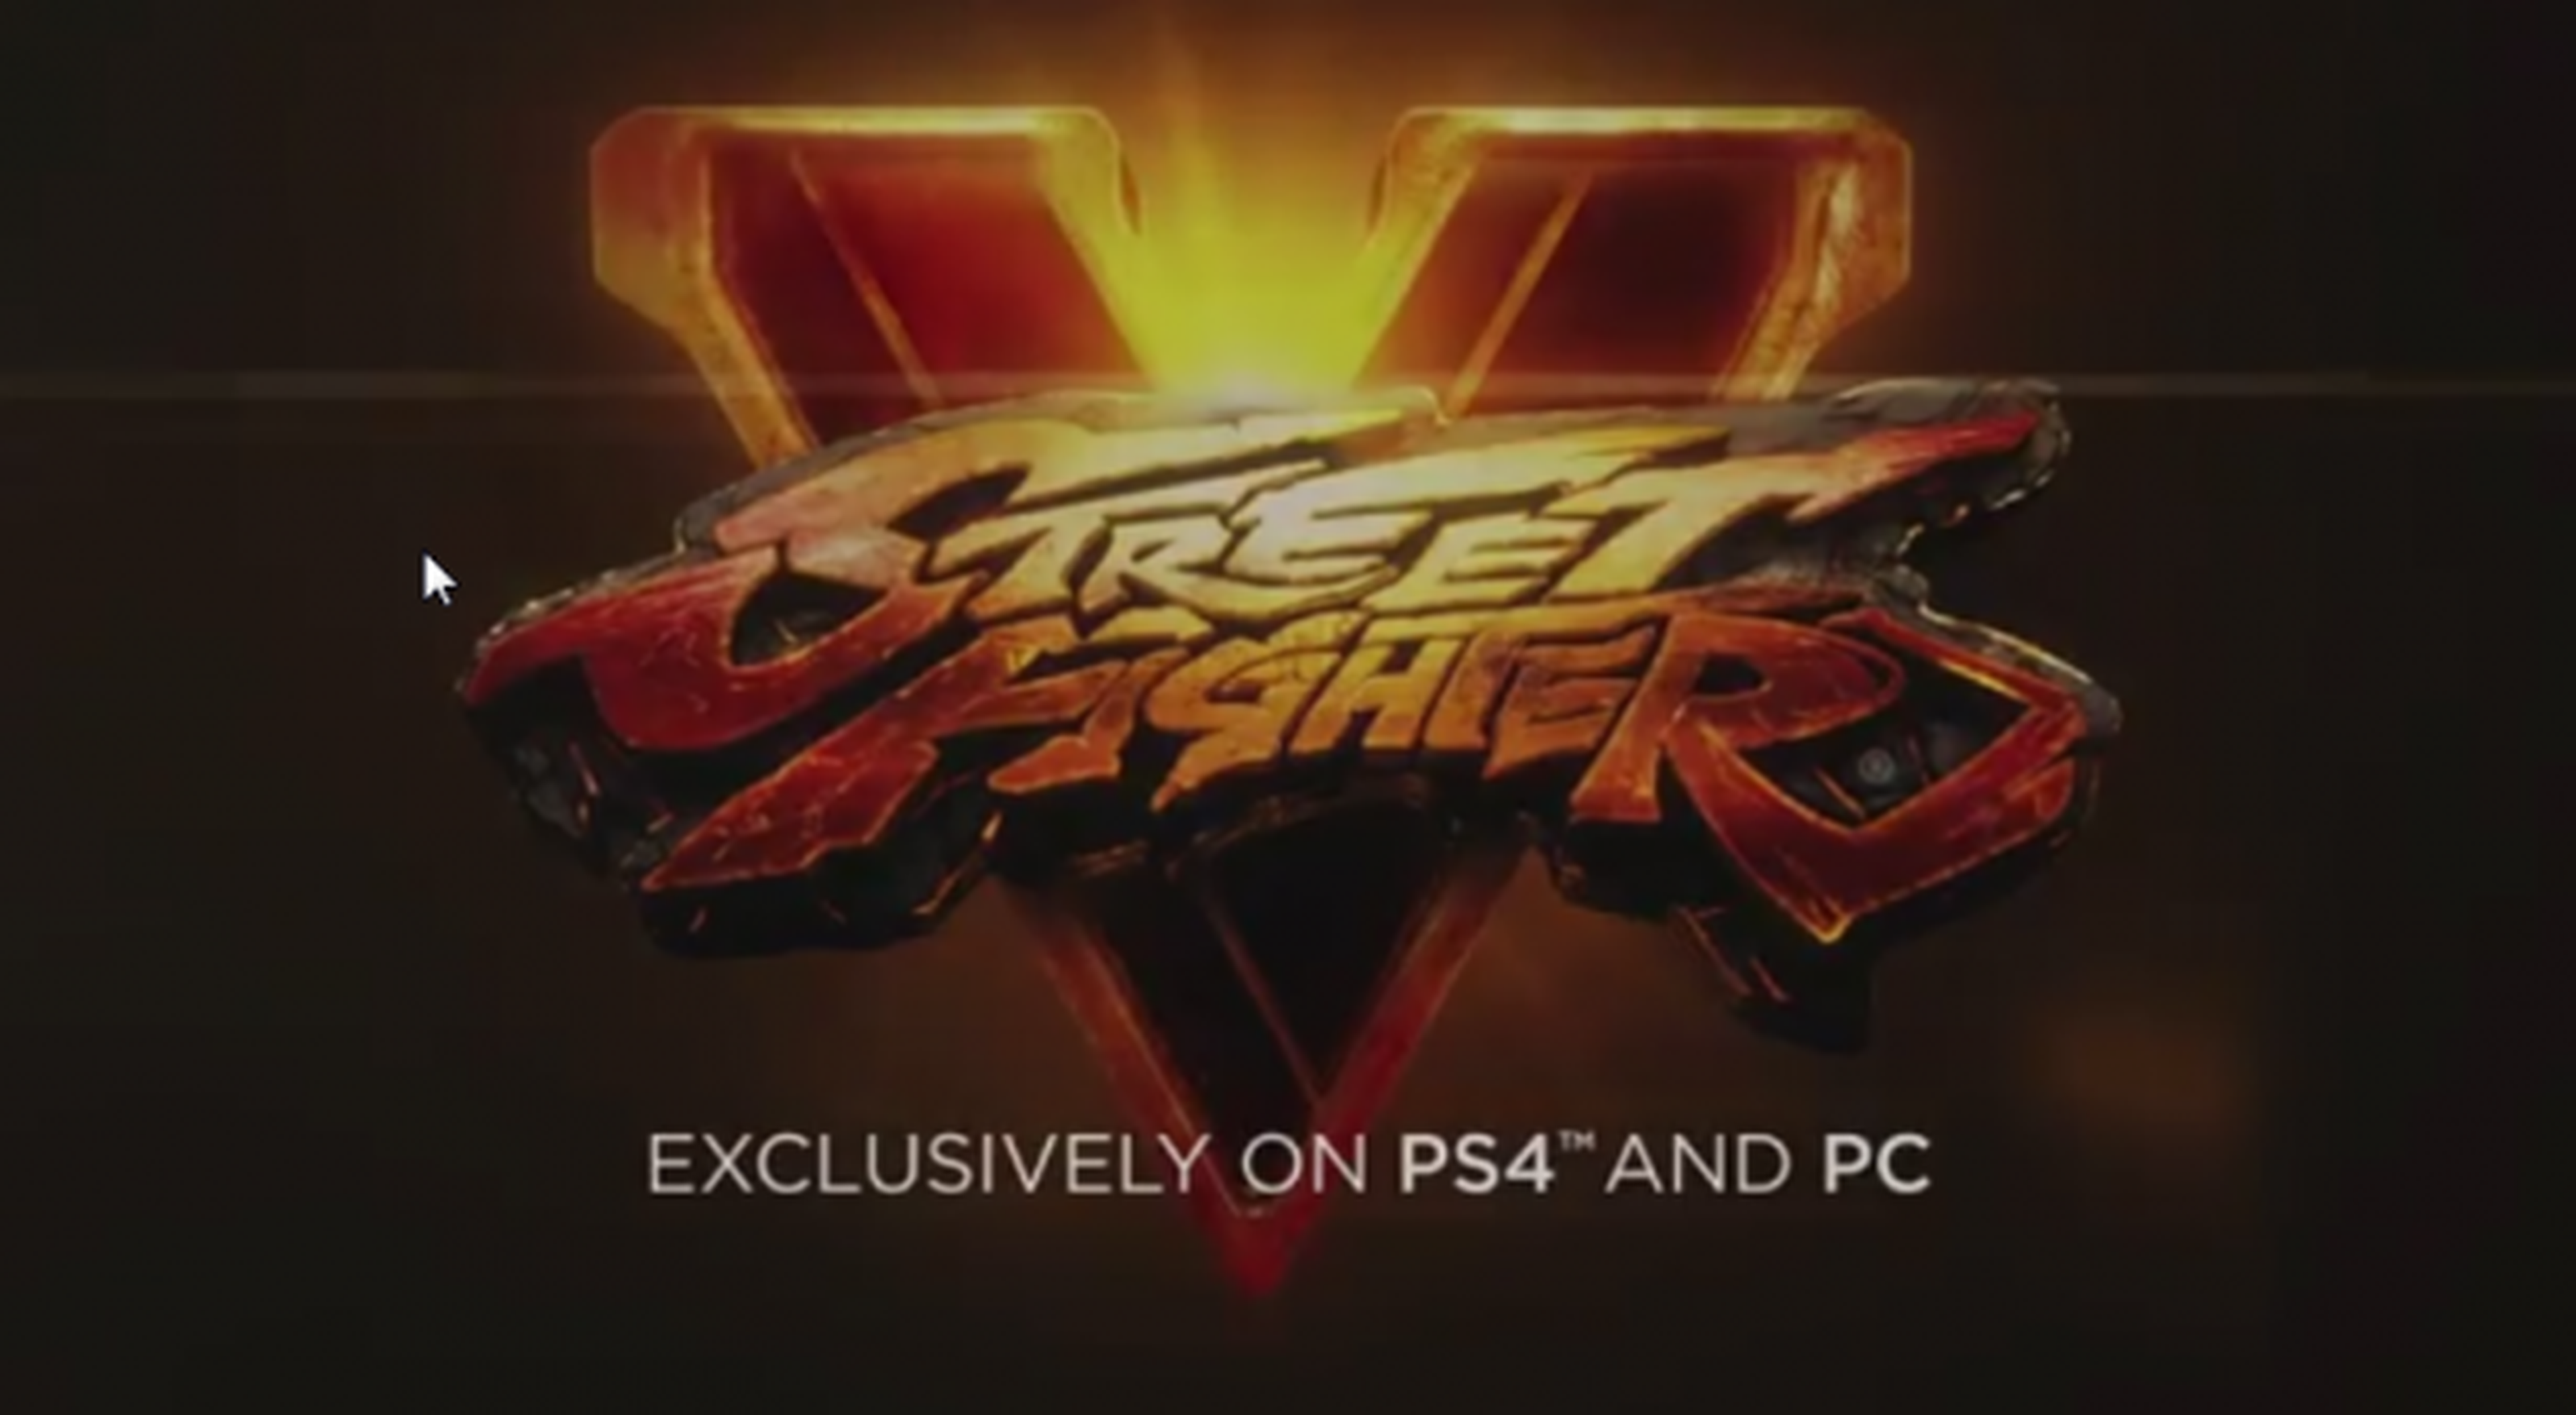 Street Fighter 5 anunciado. Exclusivo de PS4 y PC